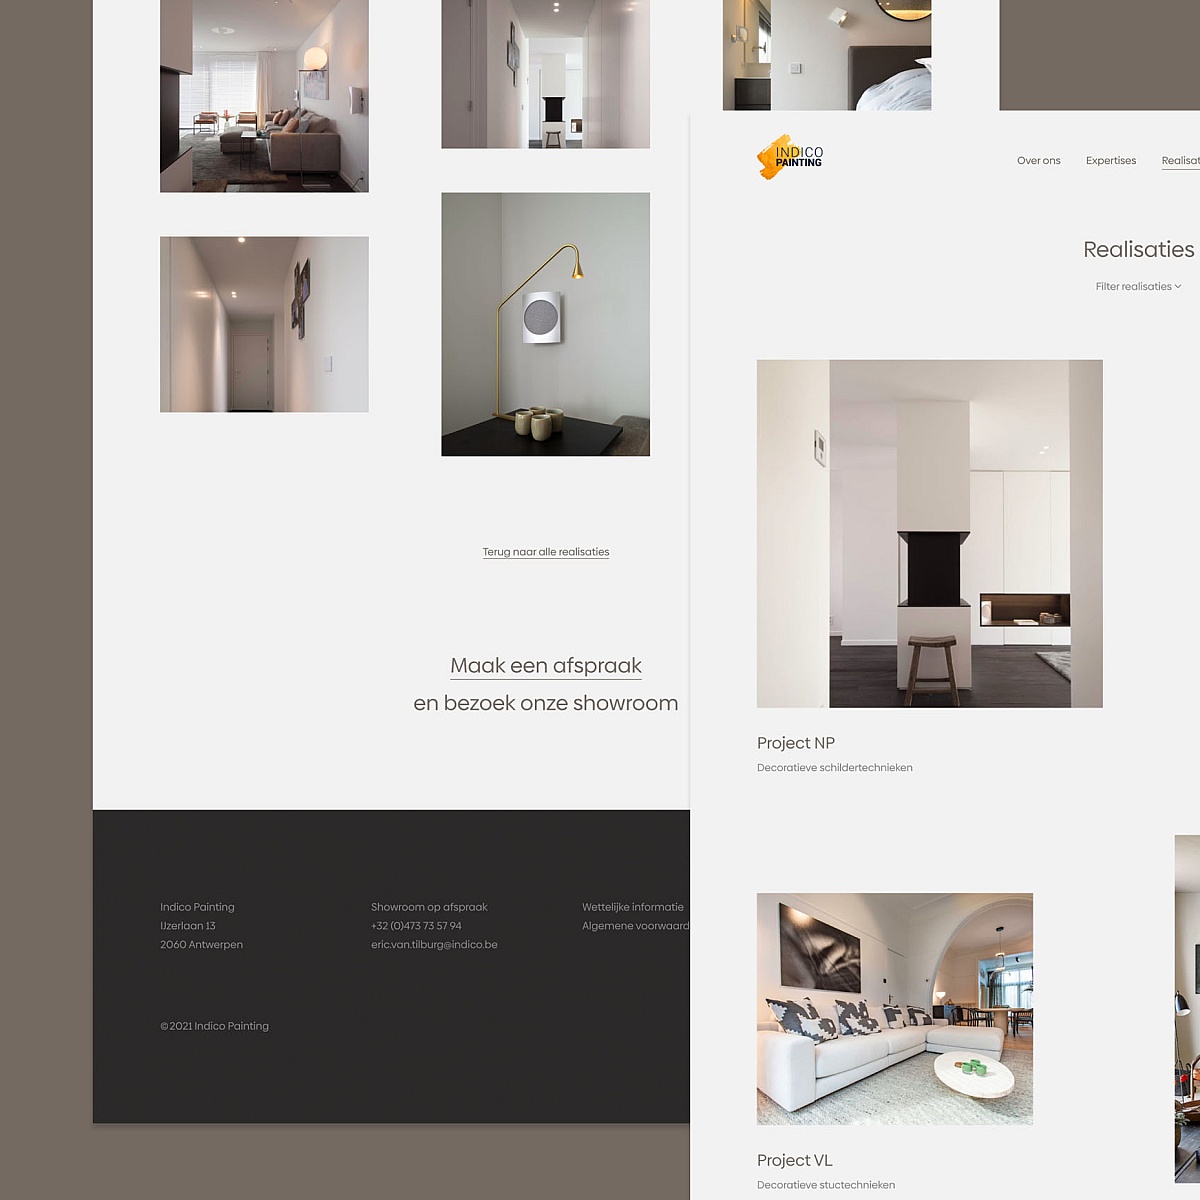 Screenshots van (details van) de website die Indico Painting liet maken door Heave Webdesign Antwerpen